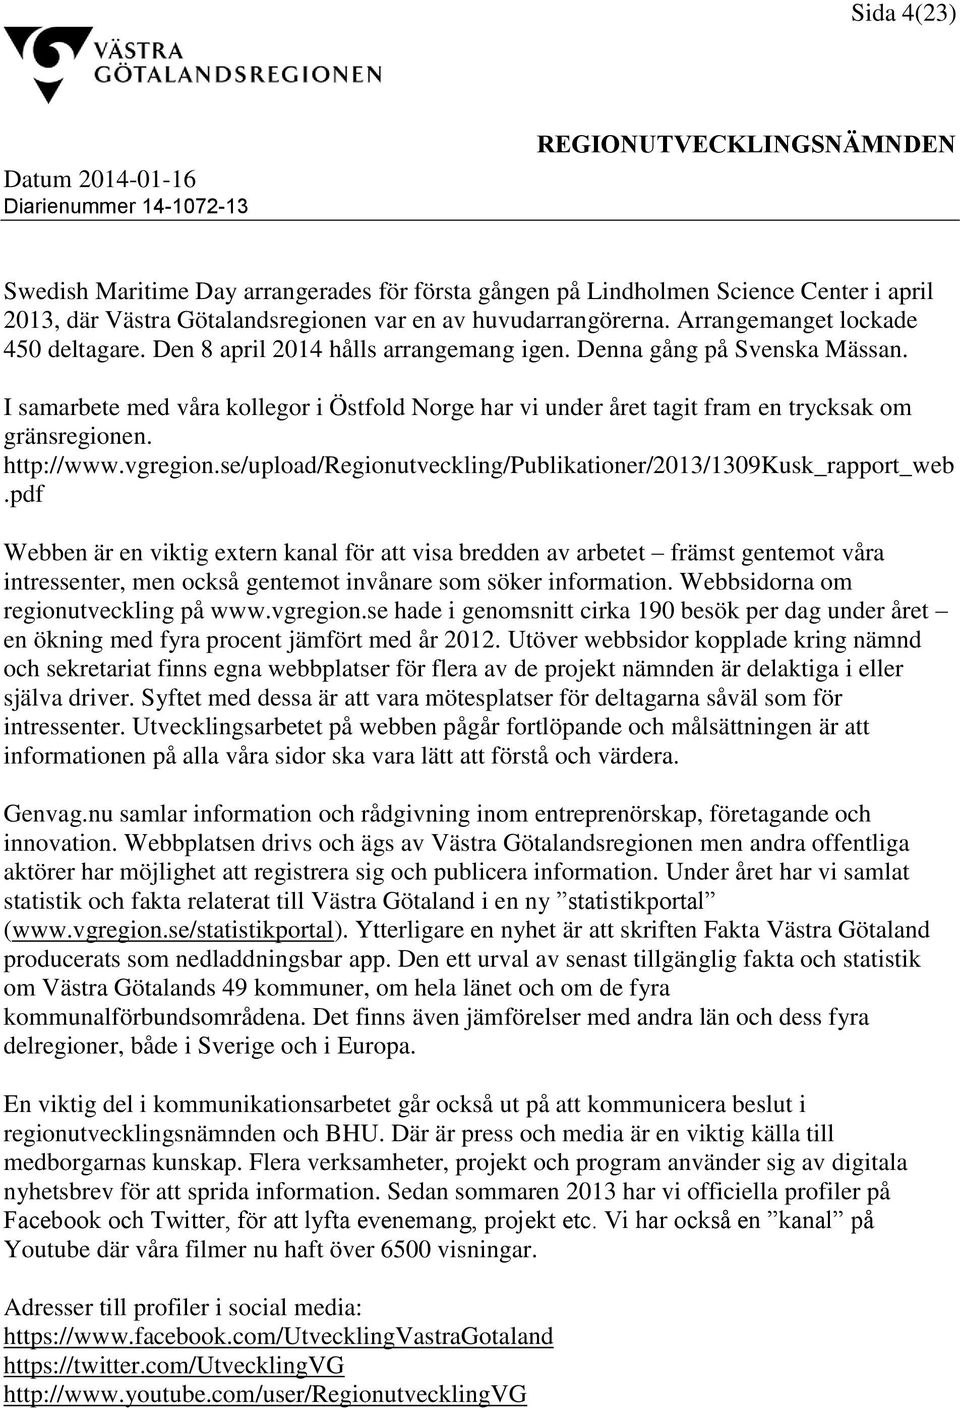 I samarbete med våra kollegor i Östfold Norge har vi under året tagit fram en trycksak om gränsregionen. http://www.vgregion.se/upload/regionutveckling/publikationer/2013/1309kusk_rapport_web.